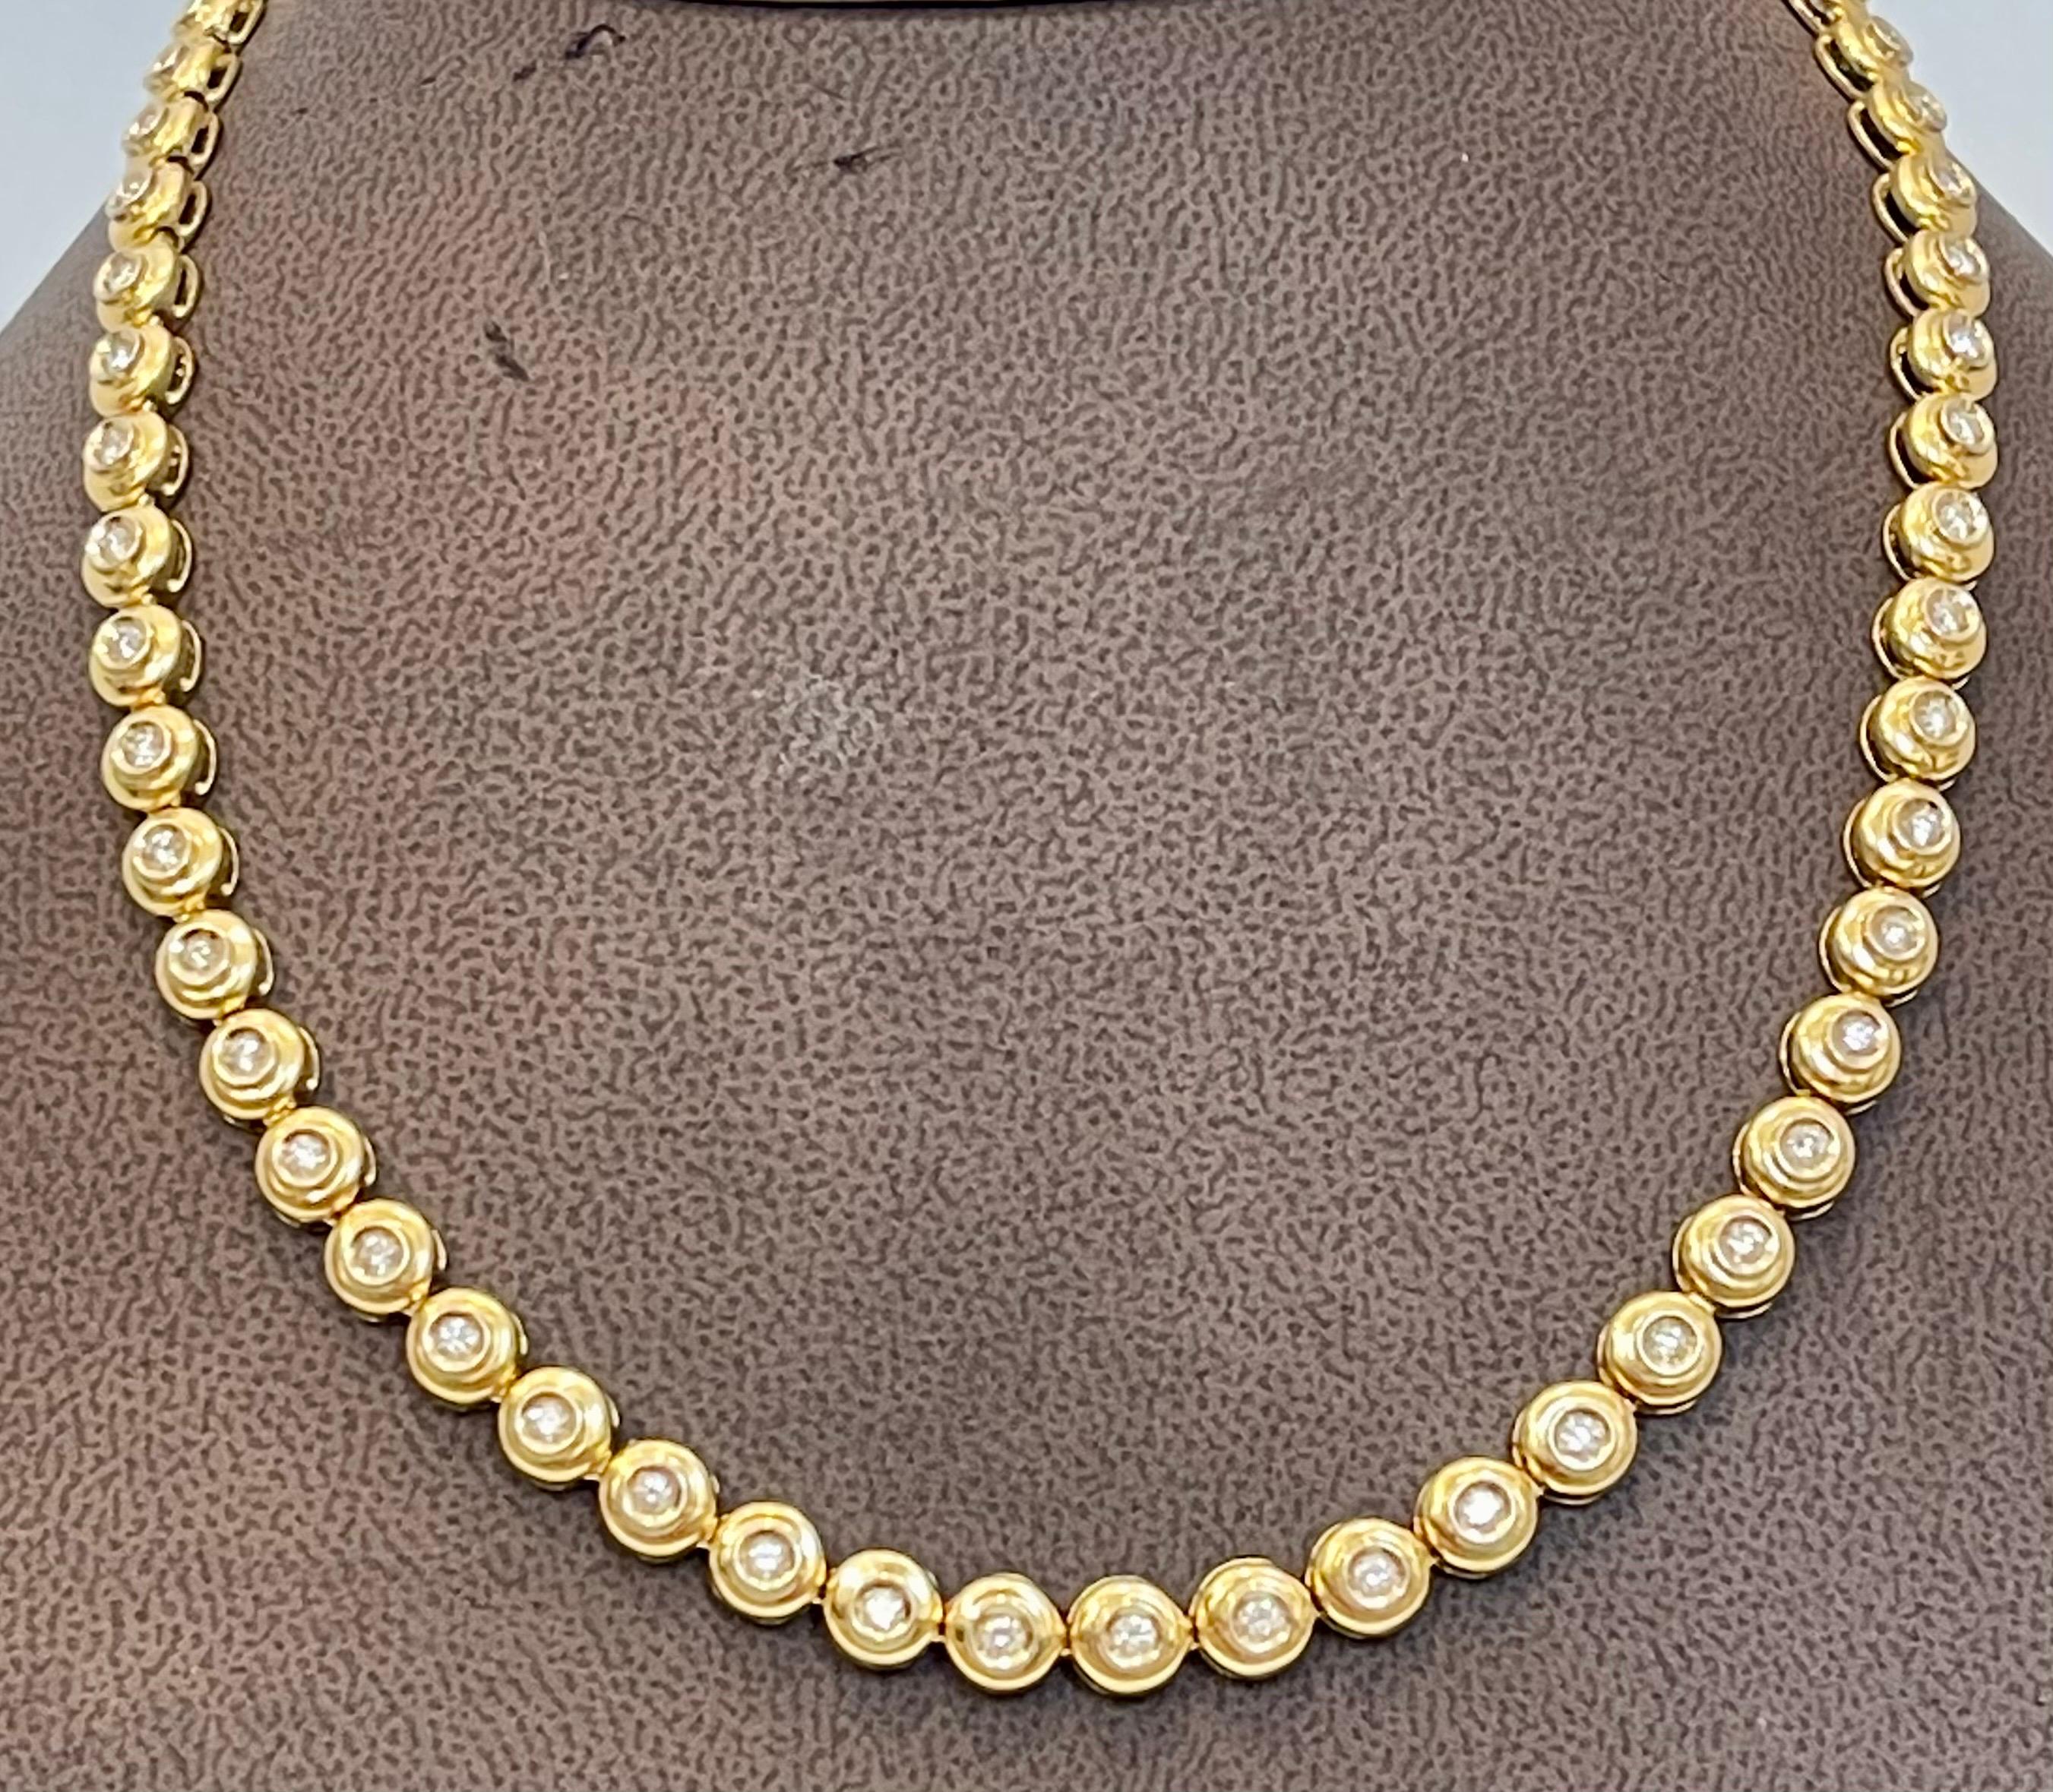 Round 6 Pointer, 4.5Ct Diamond Tennis Necklace 18Karat Yellow Gold 52 Gm, Unisex 6